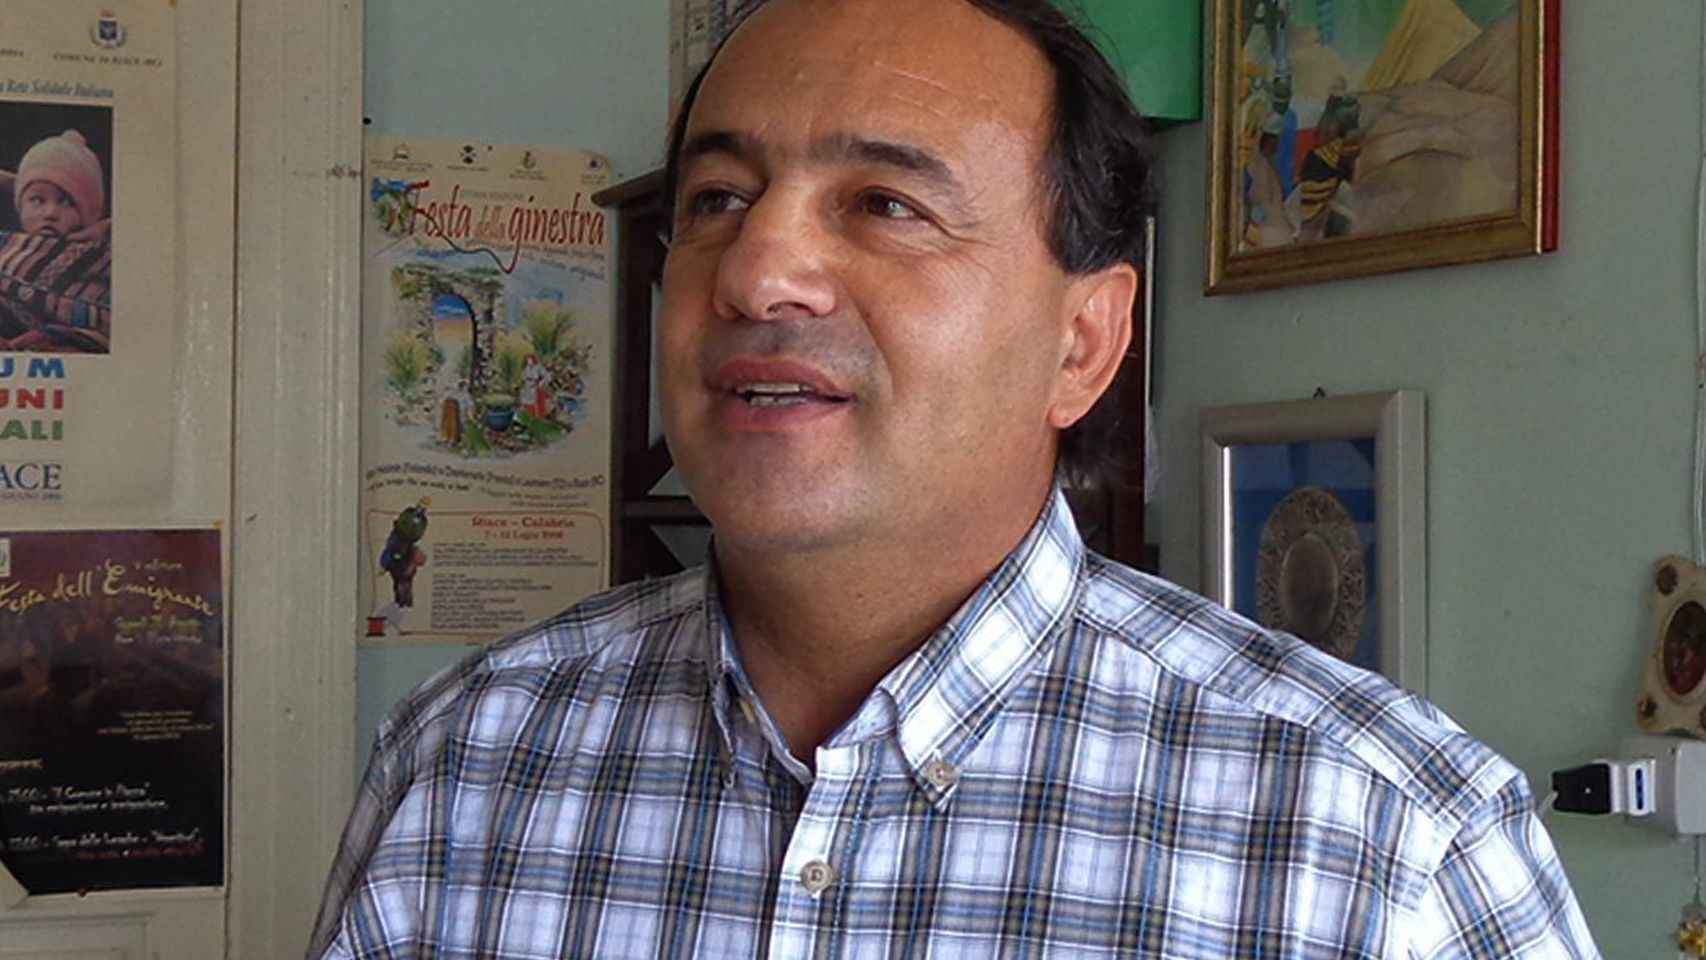 El alcalde de Riace, Dominico Lucano, es uno de los hombres más influyentes del mundo.